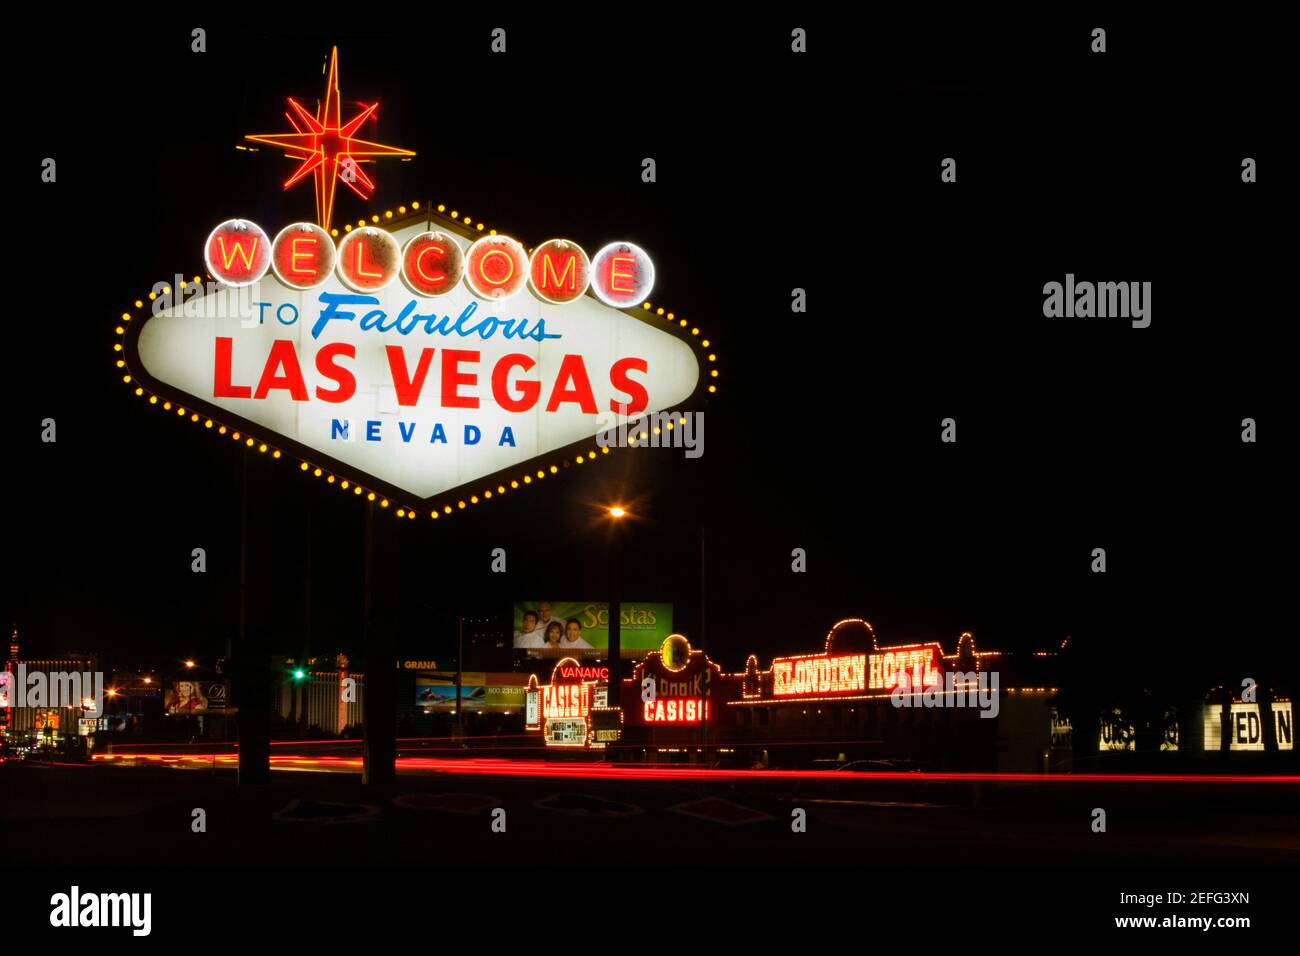 Willkommens-Schild beleuchtet in der Nacht, Las Vegas, Nevada, USA  Stockfotografie - Alamy